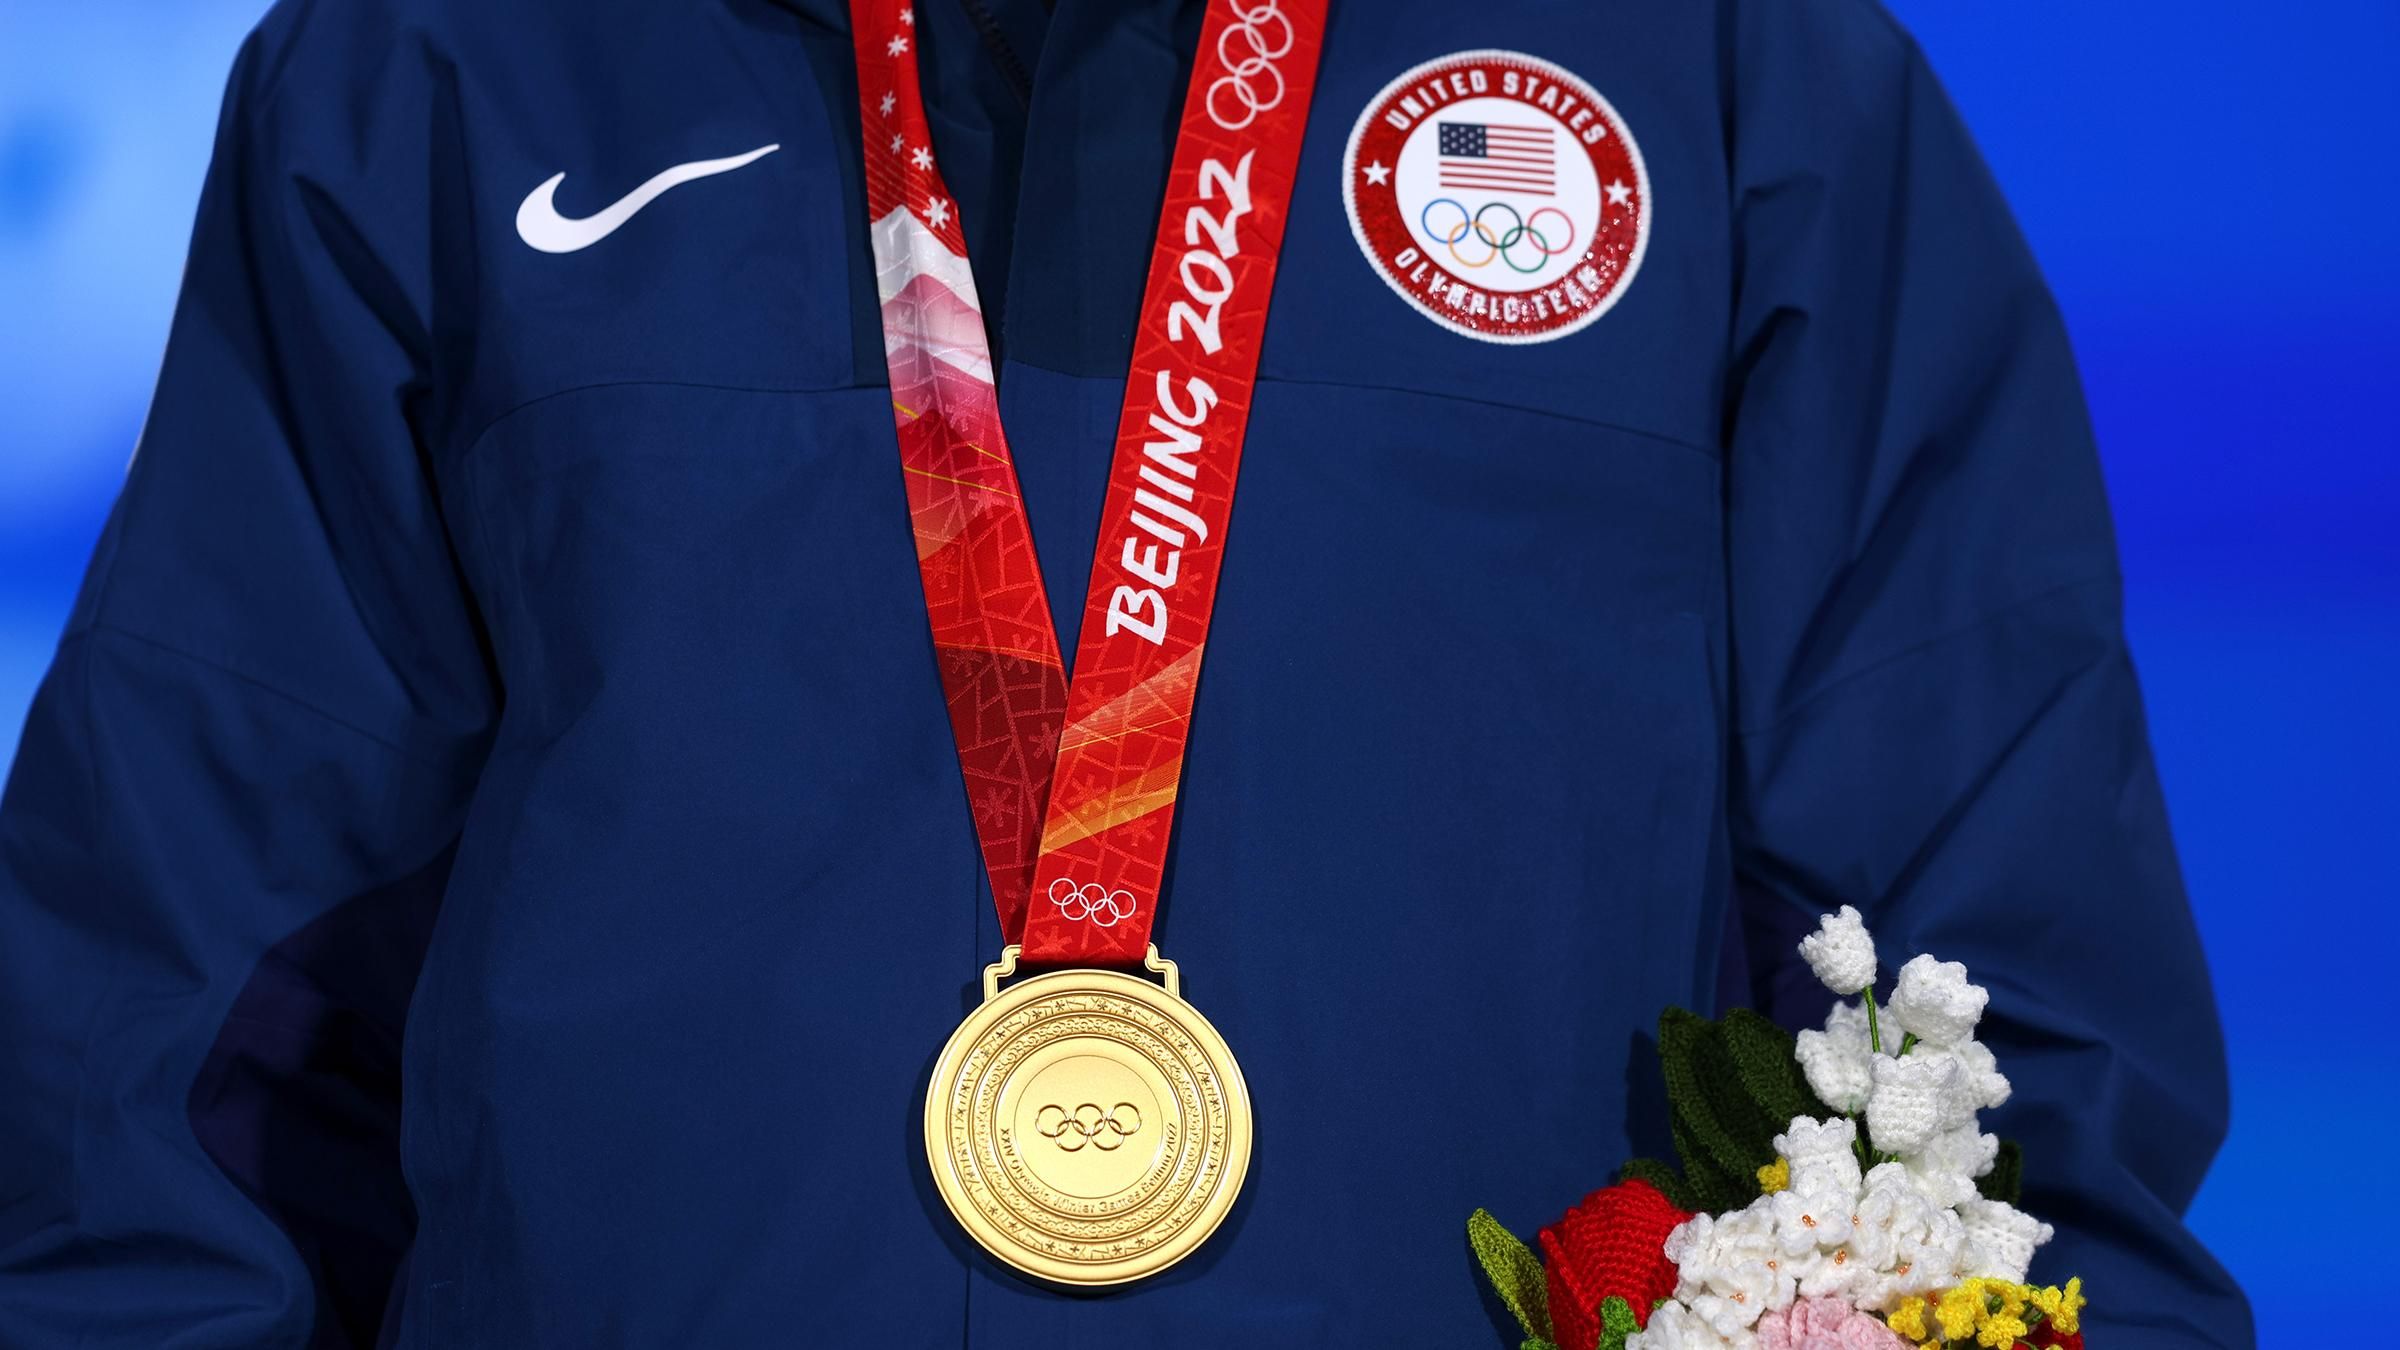 Прорыв США и первая медаль Испании: кто получил медали на Олимпиаде-2022 10 февраля